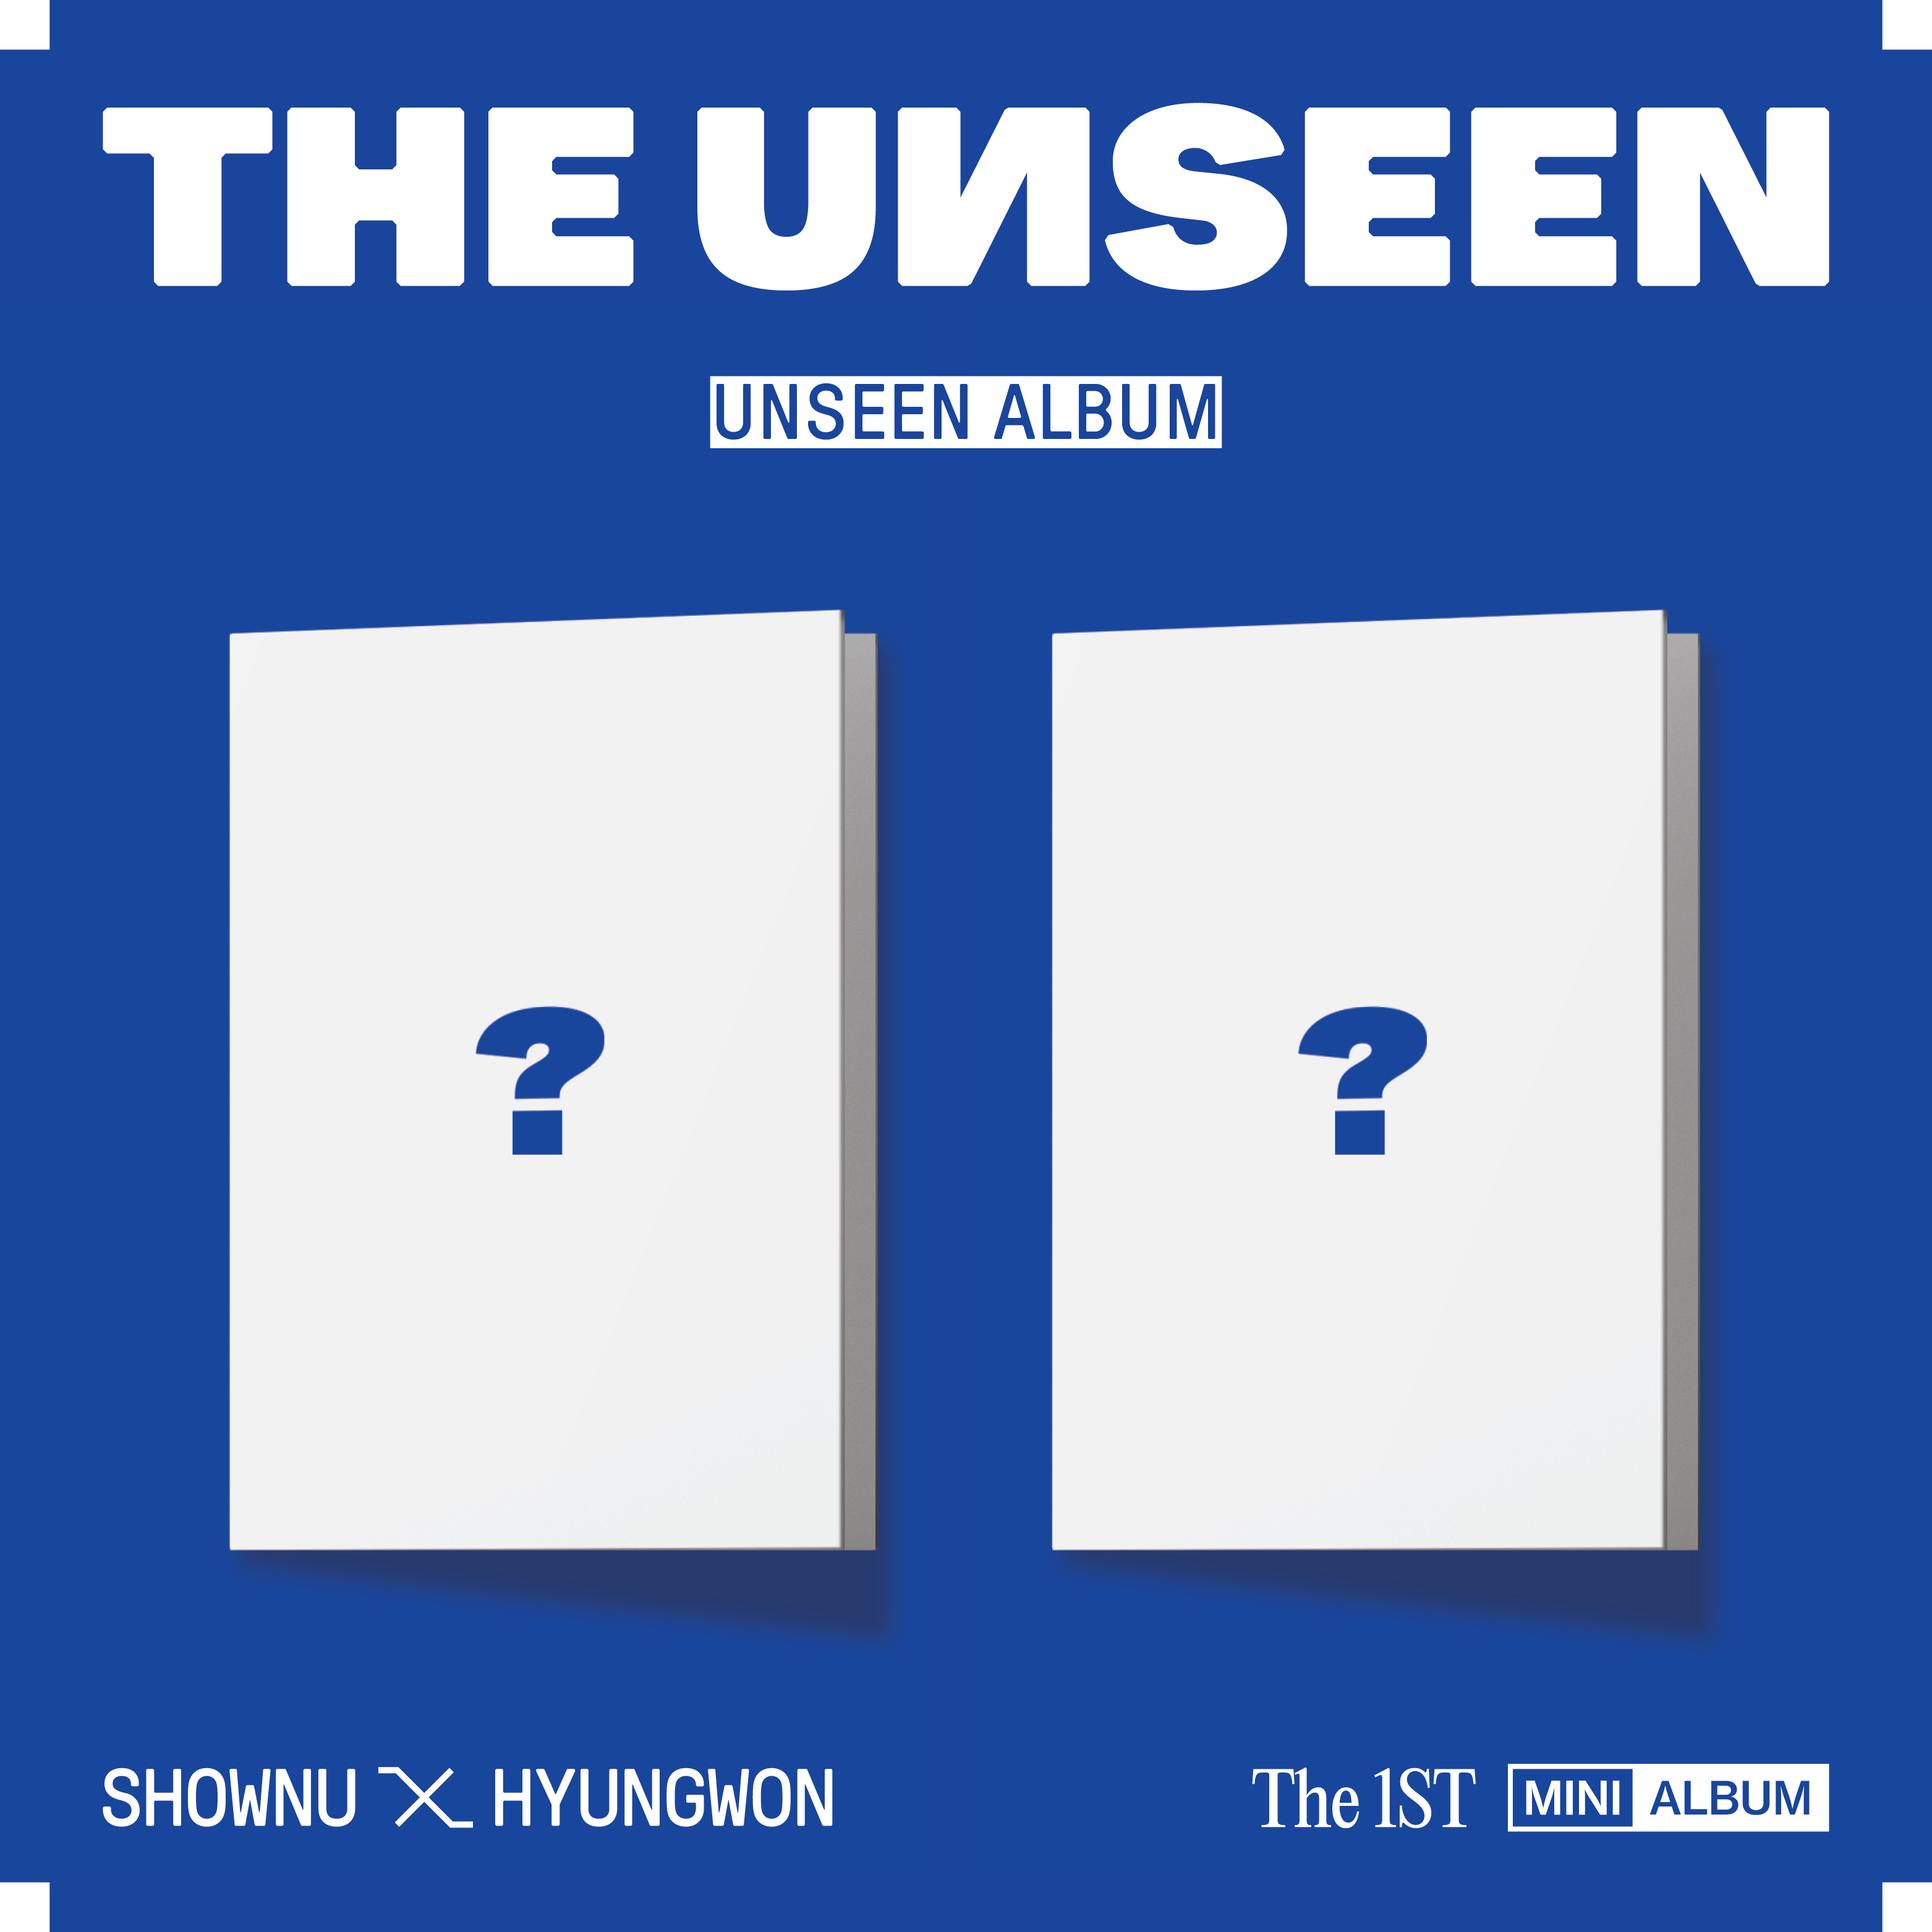 셔누 X 형원 (SHOWNU X HYUNGWON) - 미니앨범 1집 [THE UNSEEN] (UNSEEN ALBUM) (SEEN Ver.) (한정반)